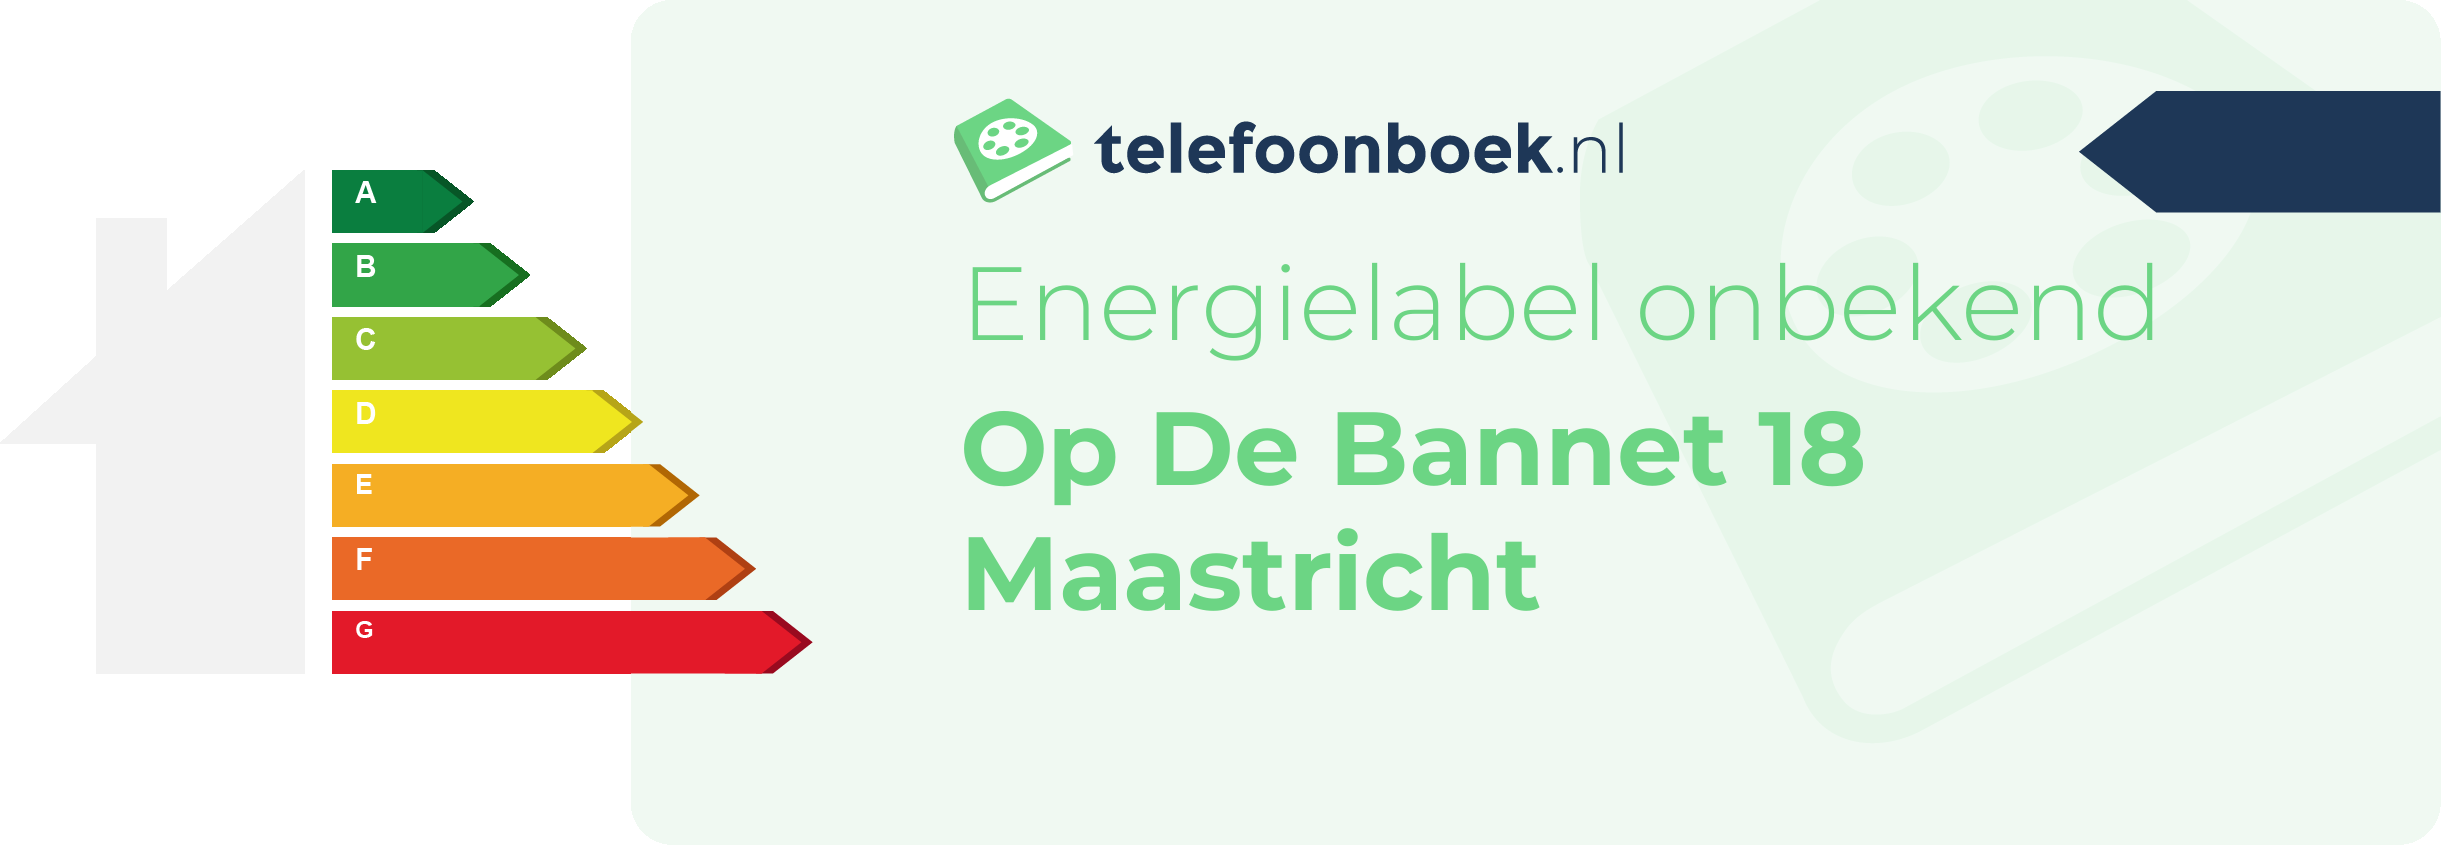 Energielabel Op De Bannet 18 Maastricht